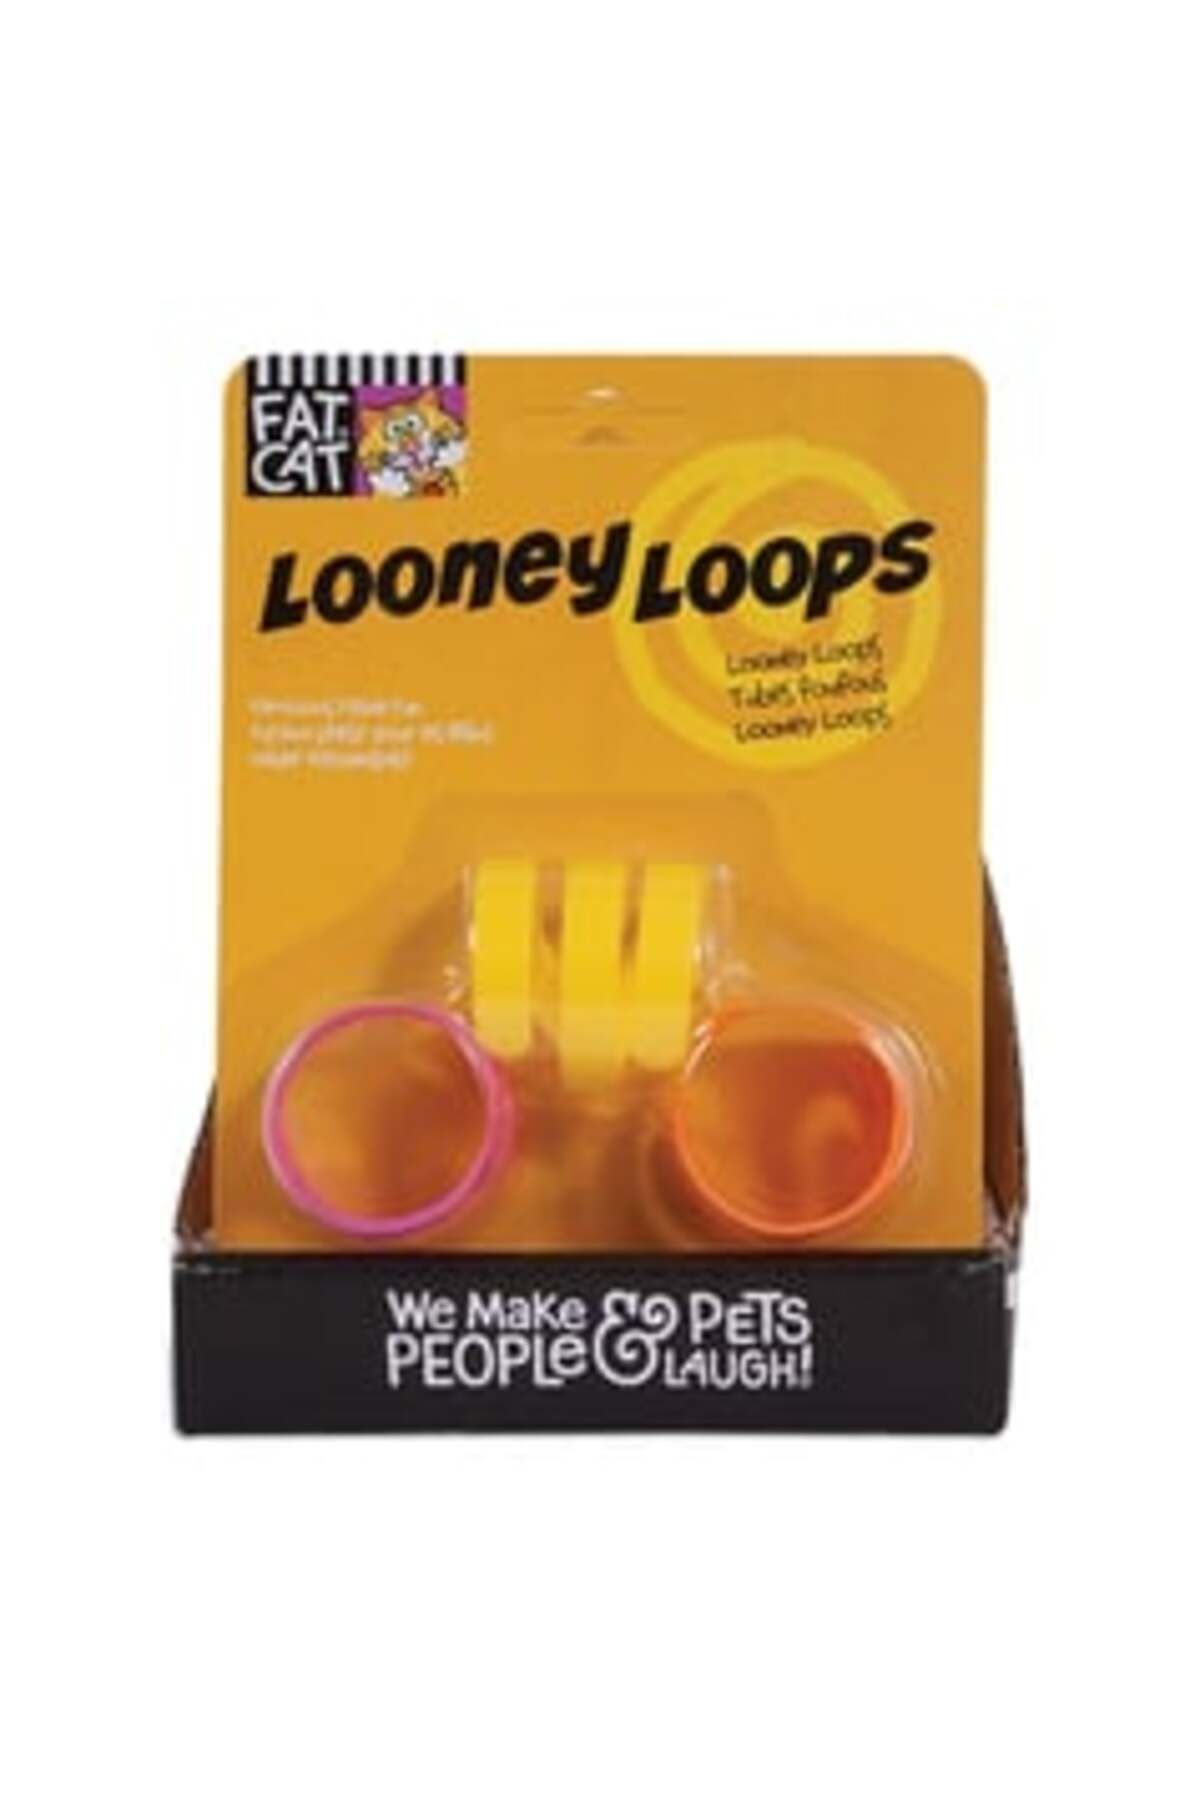 Fat Cat Looney Loops Plastik Kedi Oyuncağı ( 1 ADET )